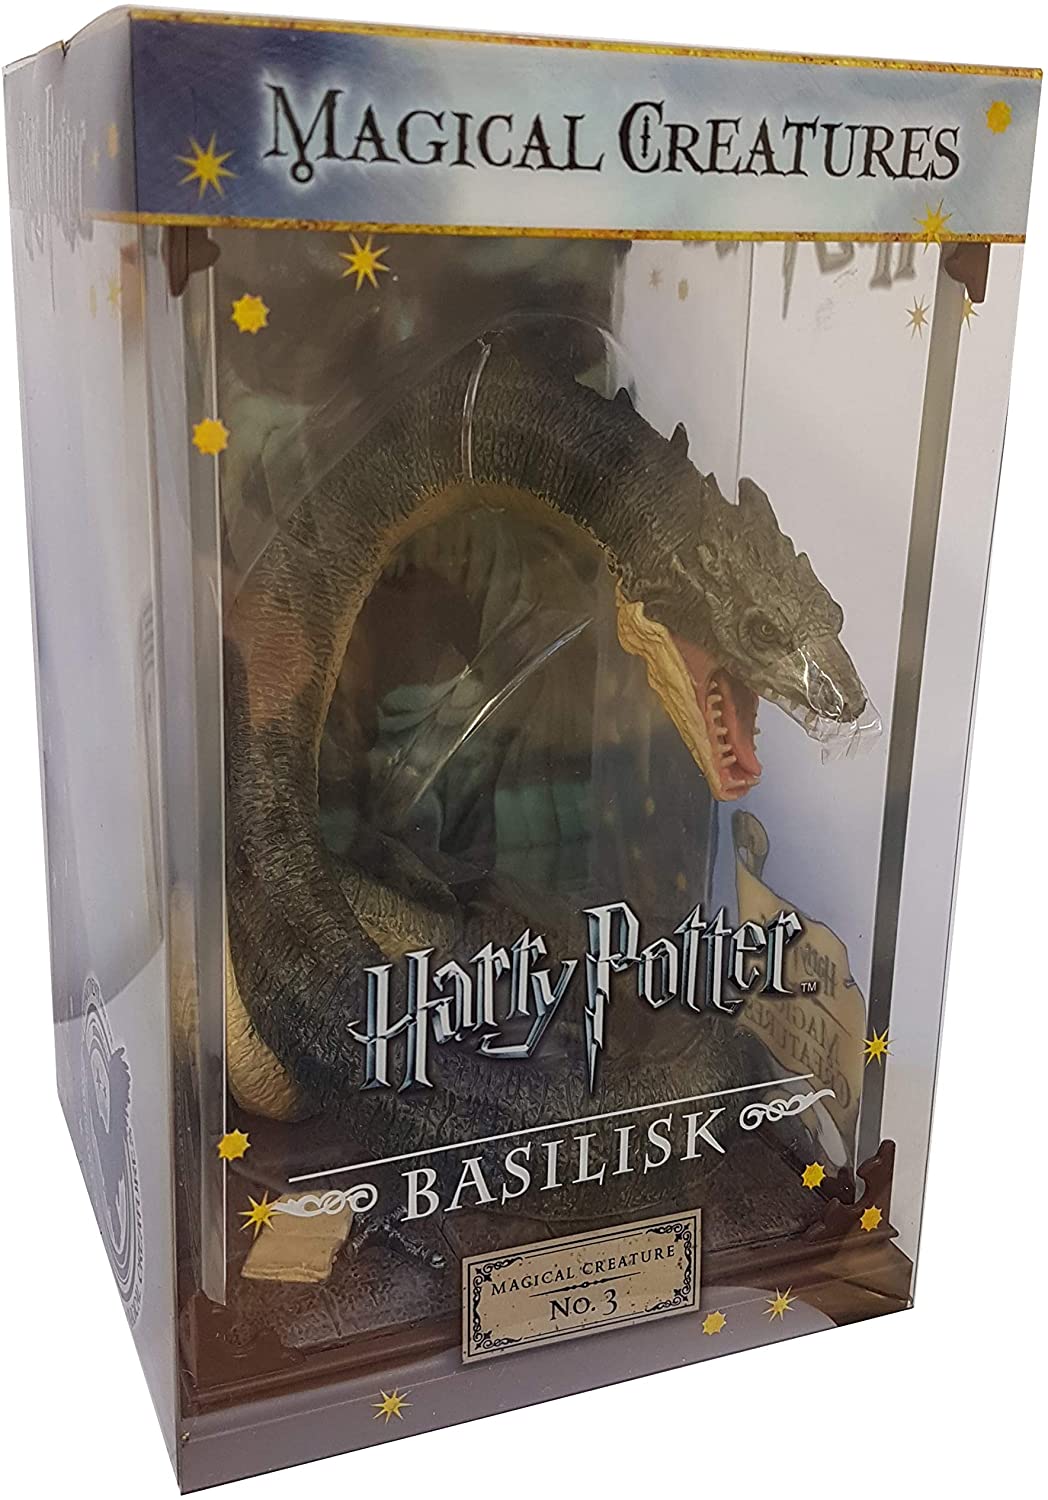 The Noble Collection – Magical Creatures Basilisk – handbemaltes magisches Geschöpf Nr. 3 – offiziell lizenzierte 7 Zoll (18,5 cm) Harry Potter Toys Sammelfiguren – für Kinder und Erwachsene